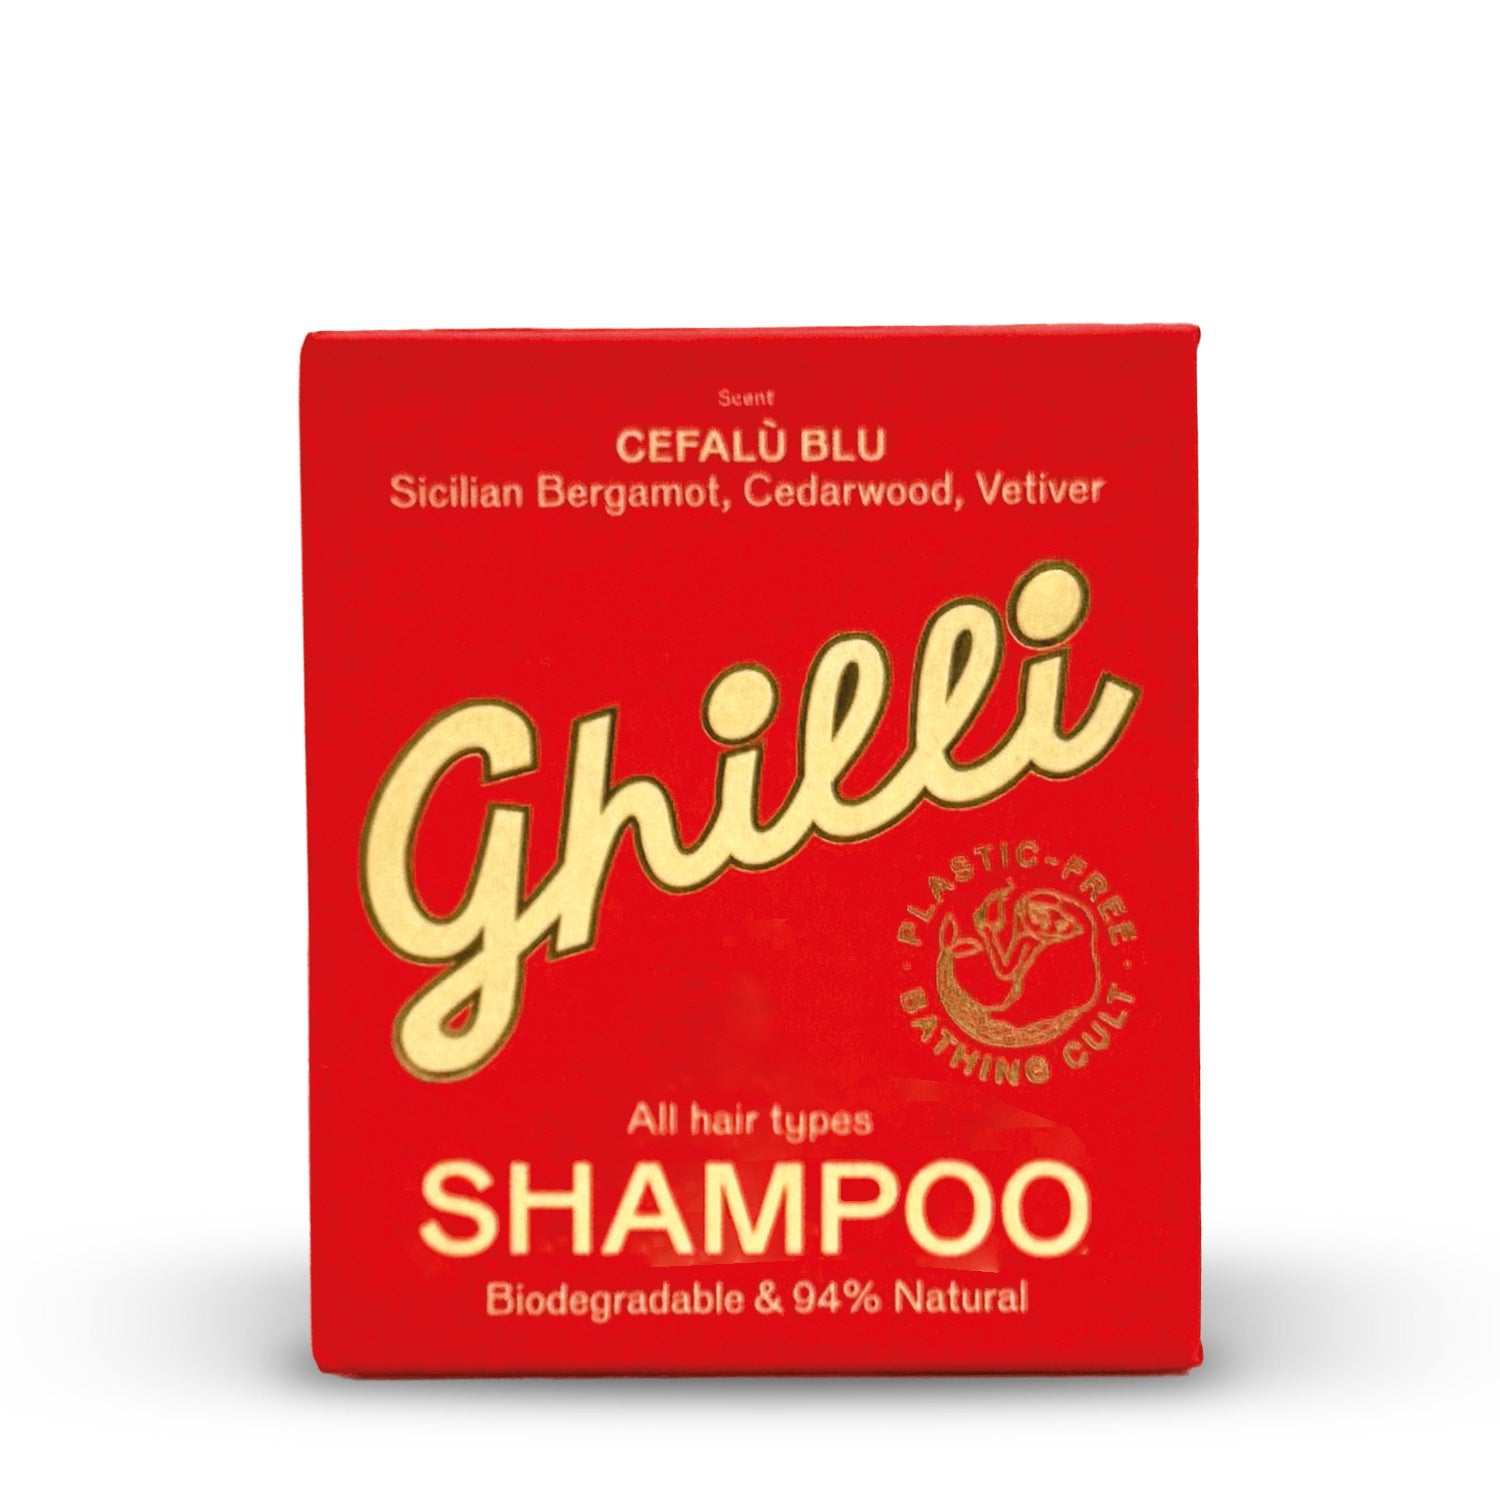 Shampoo Bar Cefalù Blu - Ghilli